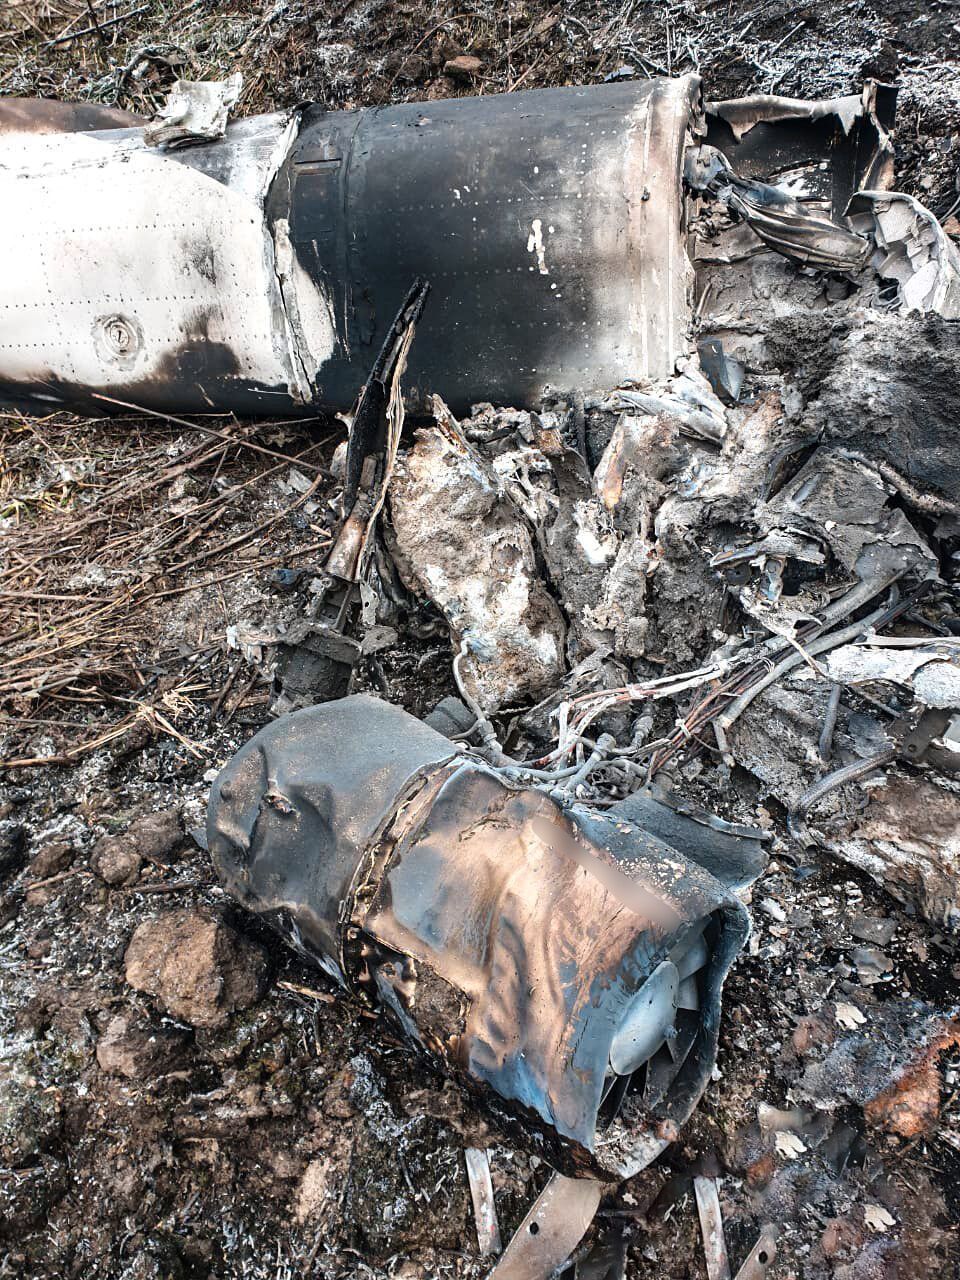 Украинские нацгвардейцы сбили вражескую крылатую ракету Х-101 из стрелкового оружия: фото и впечатляющие подробности